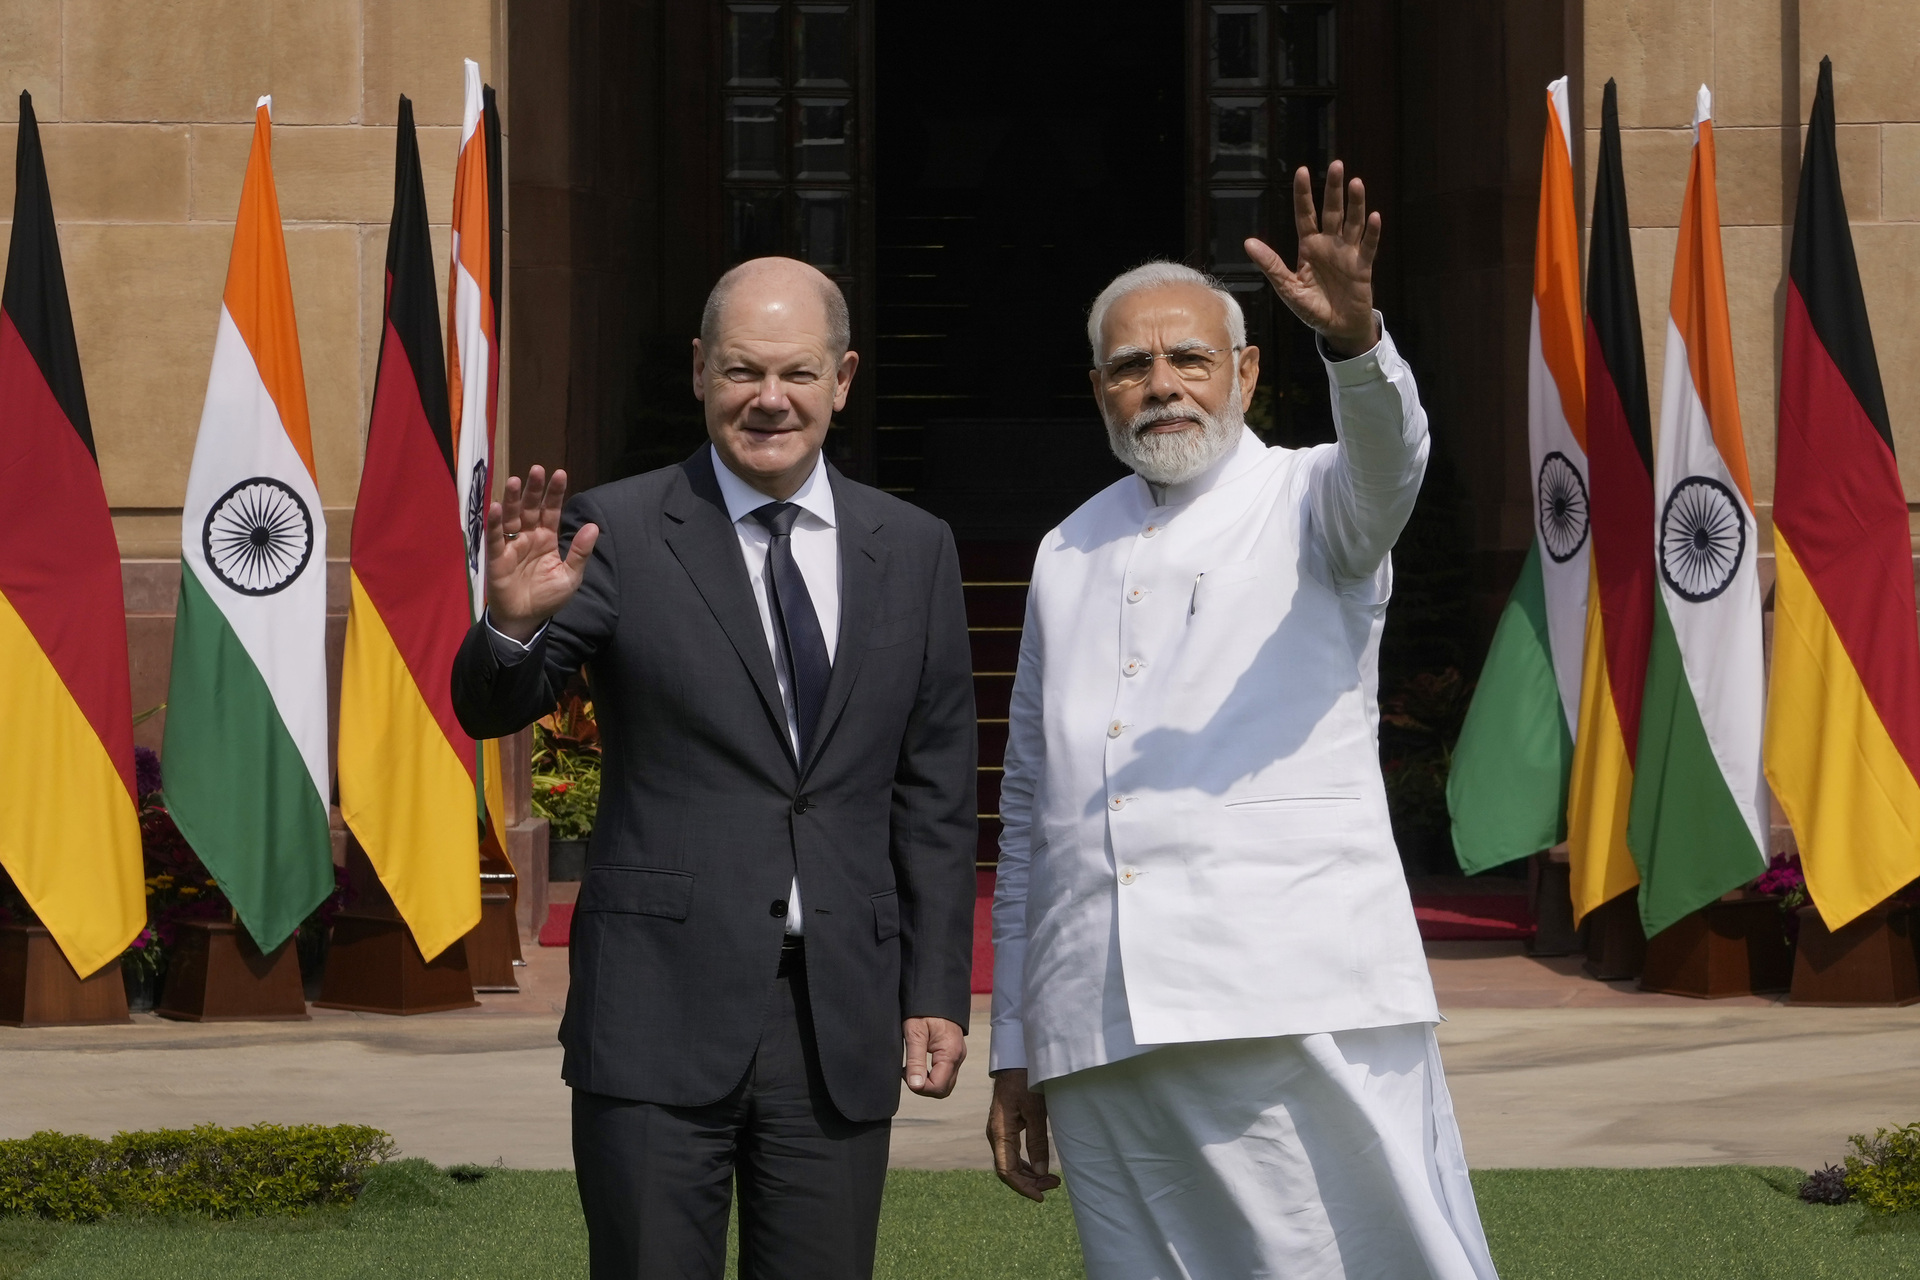 El líder alemán, que arribó a la capital india el sábado, también conversó con Modi sobre formas de impulsar la cooperación económica bilateral. (AP)